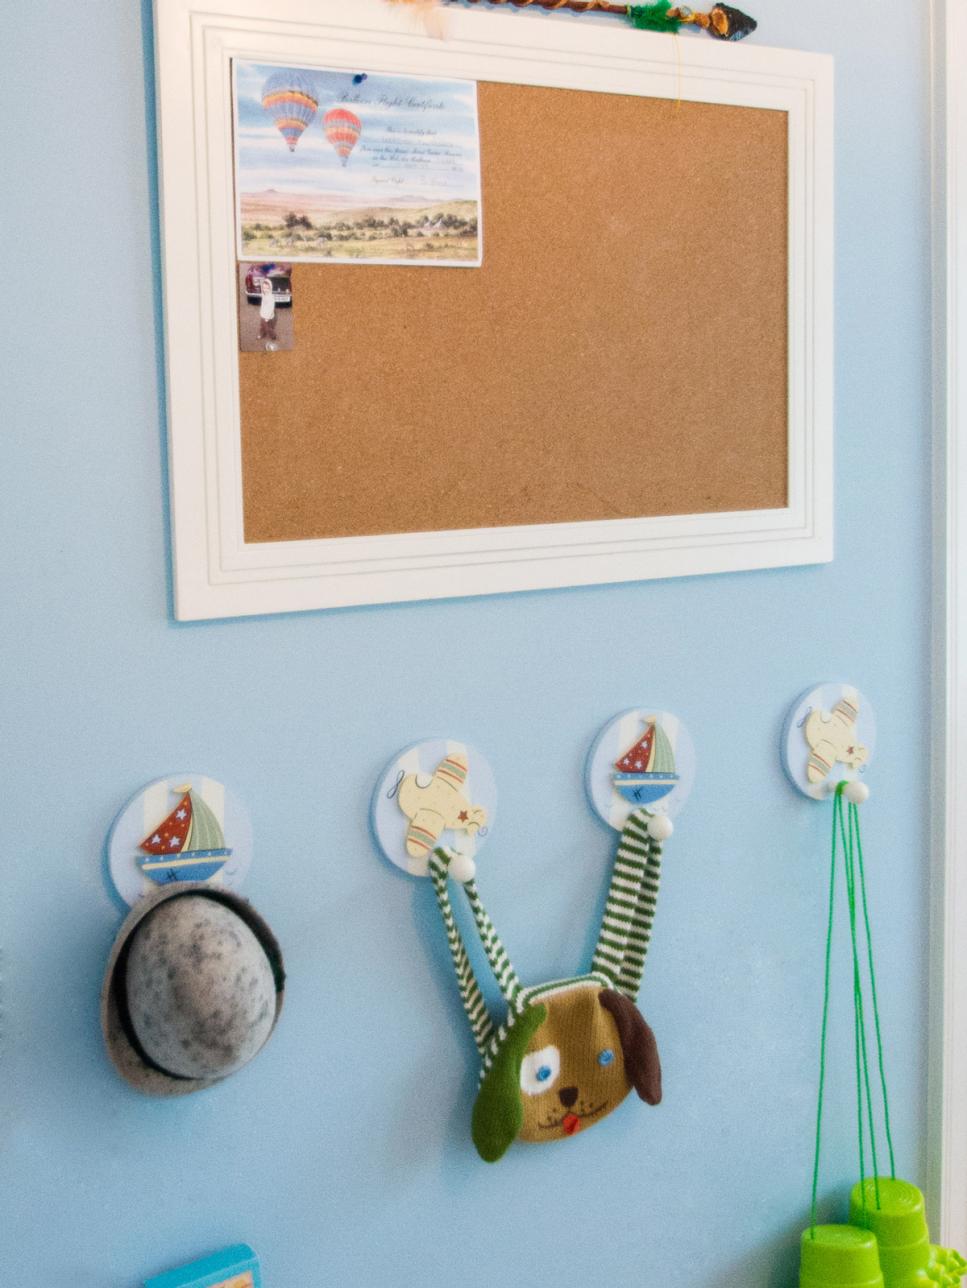 Blue Kids' Bedroom With Decorative Hooks Below Bulletin Board